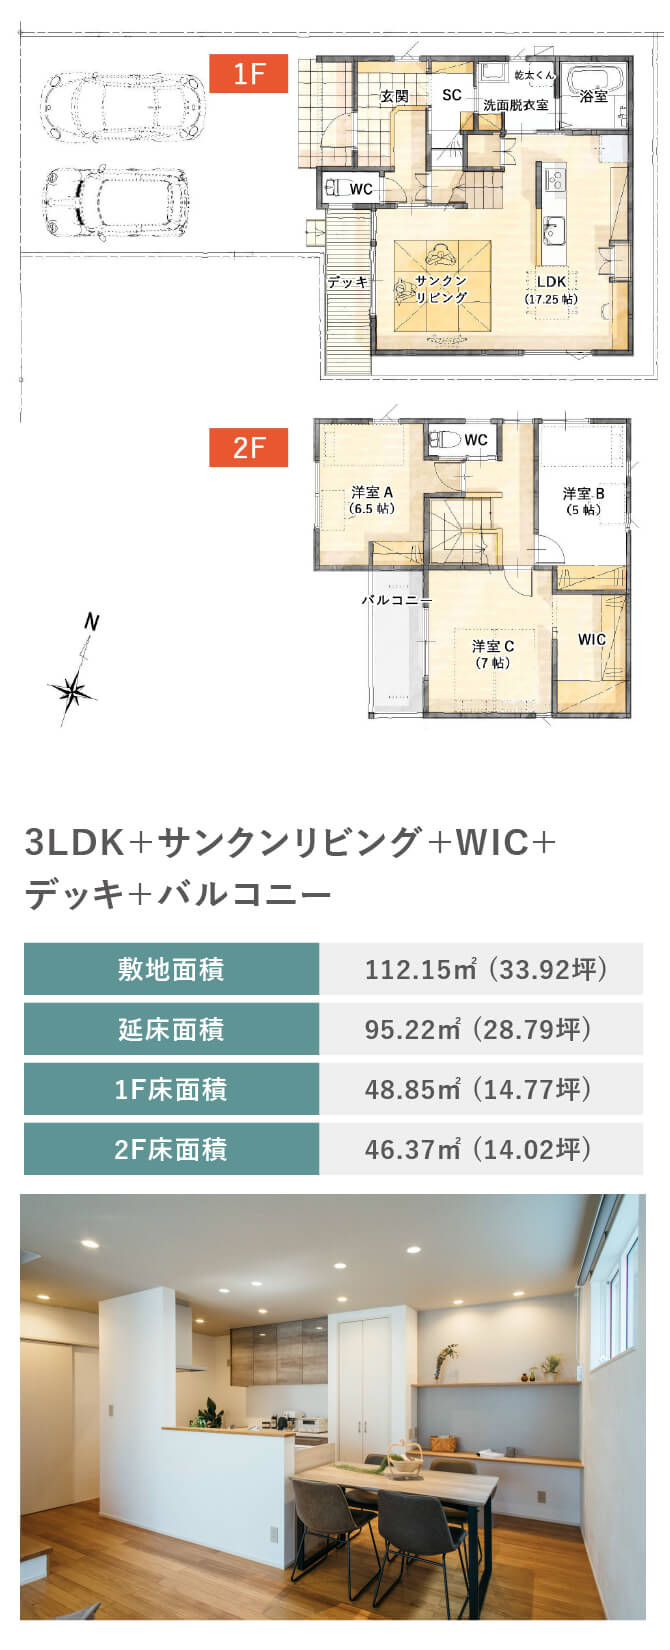 3LDK+WIC+ホール吹抜